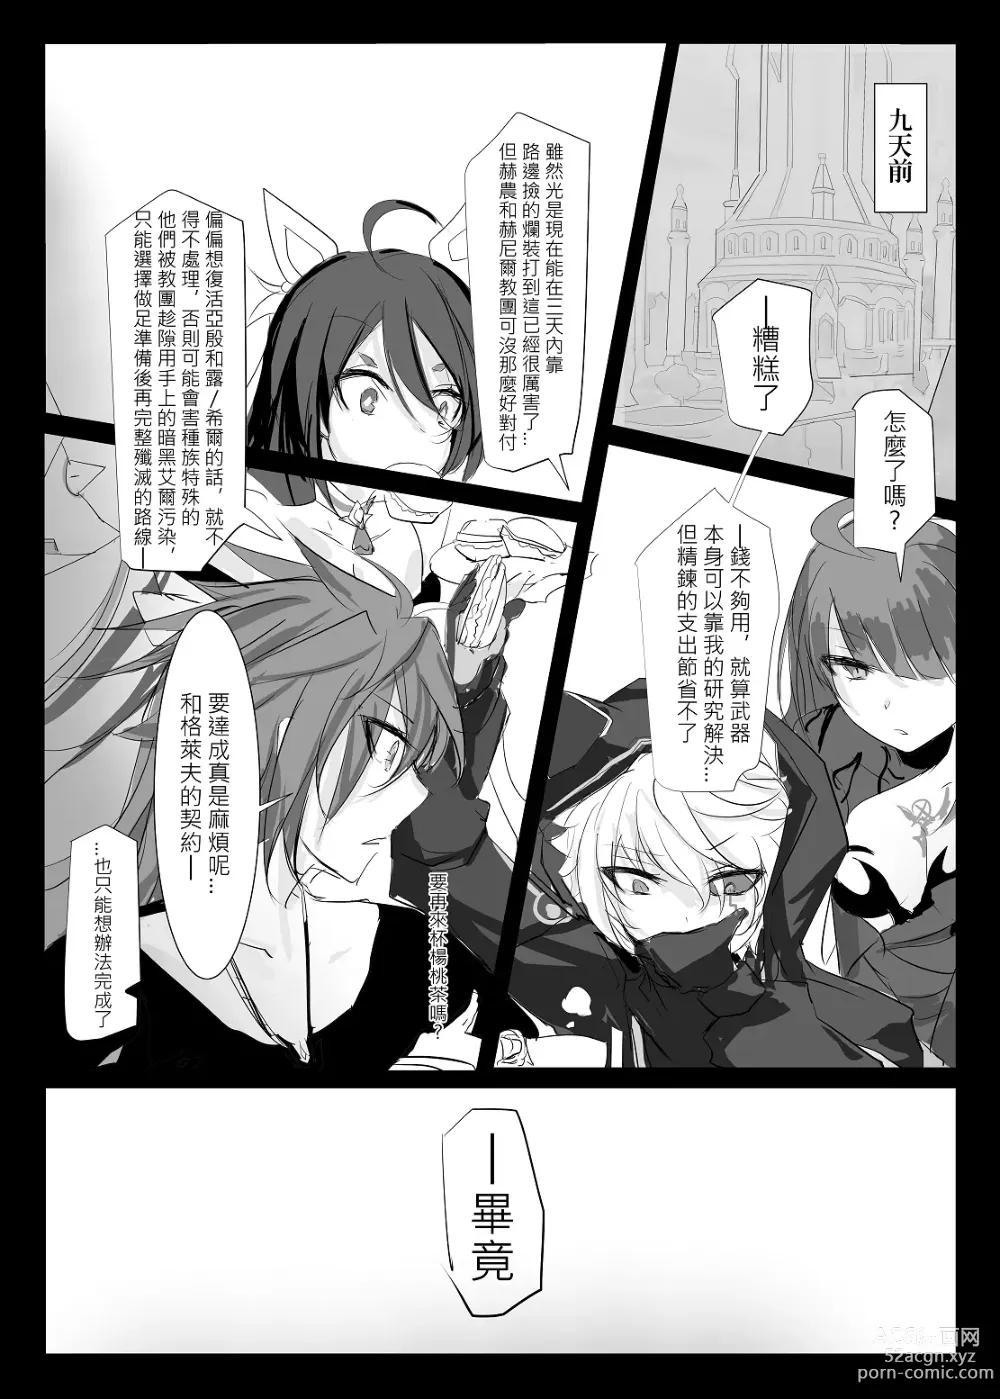 Page 7 of doujinshi ELSWORD:TYPE-V (decensored)